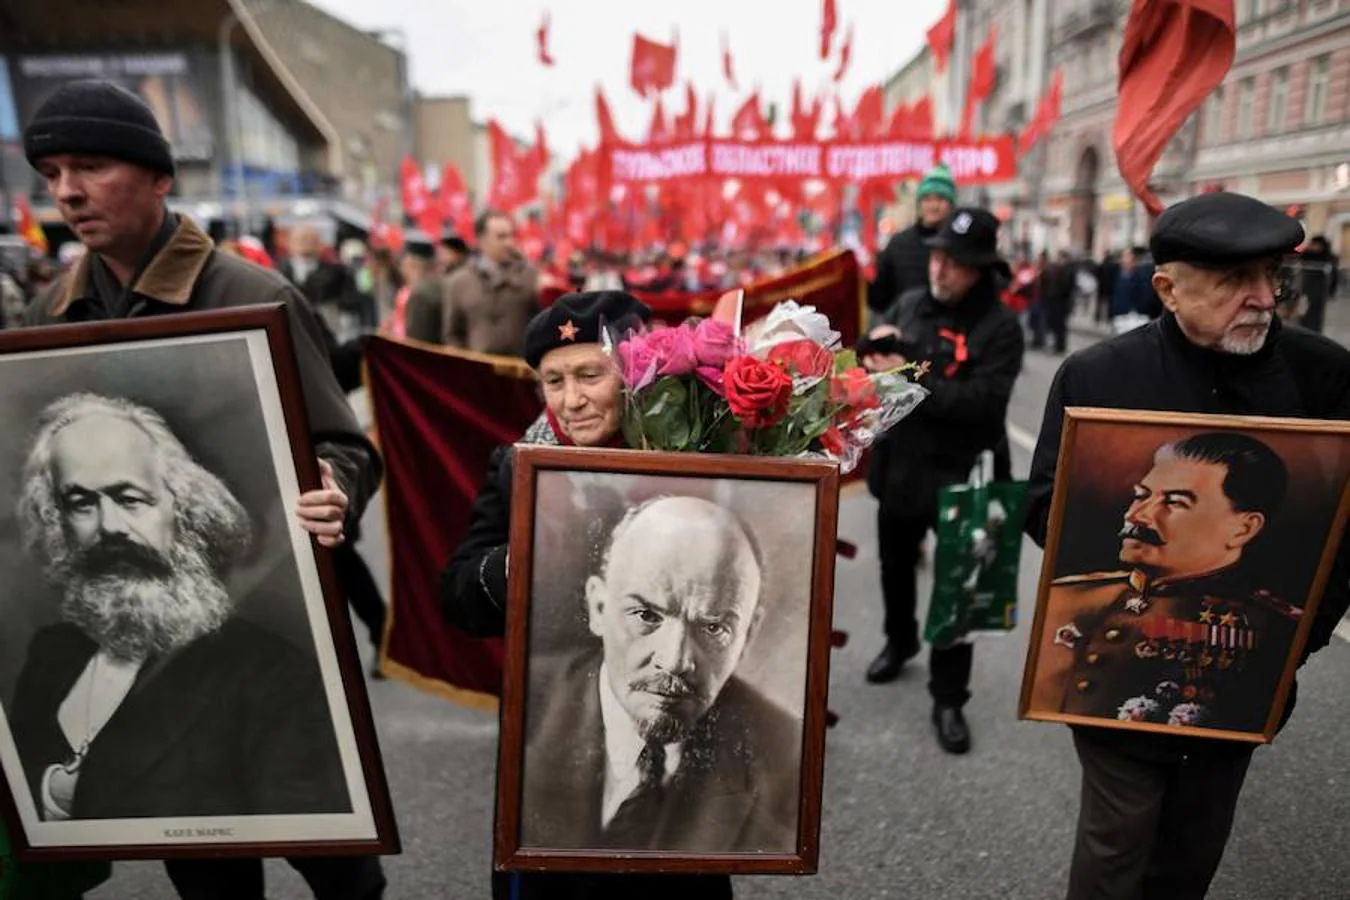 Simpatizantes comunistas llevan retratos de Karl Marx, Vladimir Lenin y Josef Stalin, durante una de las manifestaciones celebradas en Moscú para conmerar el centenario de la Revolución Rusa, que se cumple hoy. 